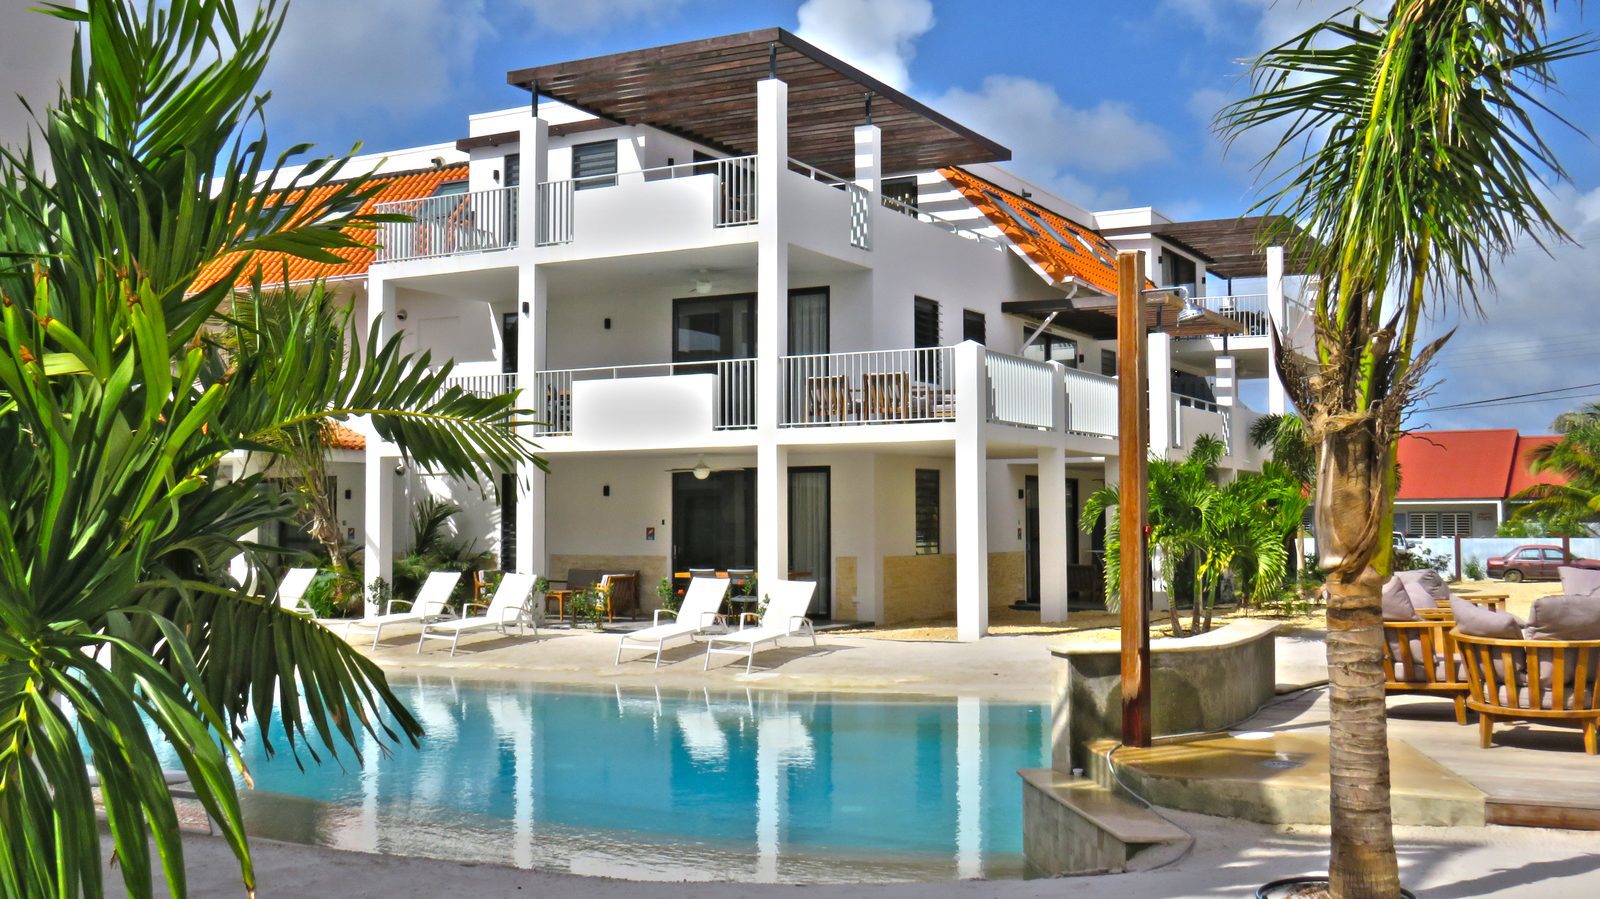 Verbljiven op Bonaire? Dat kan bij Resort Bonaire! Wij hebben diverse appartementen die luxe zijn uitgevoerd en beschikken over alle gemakken.